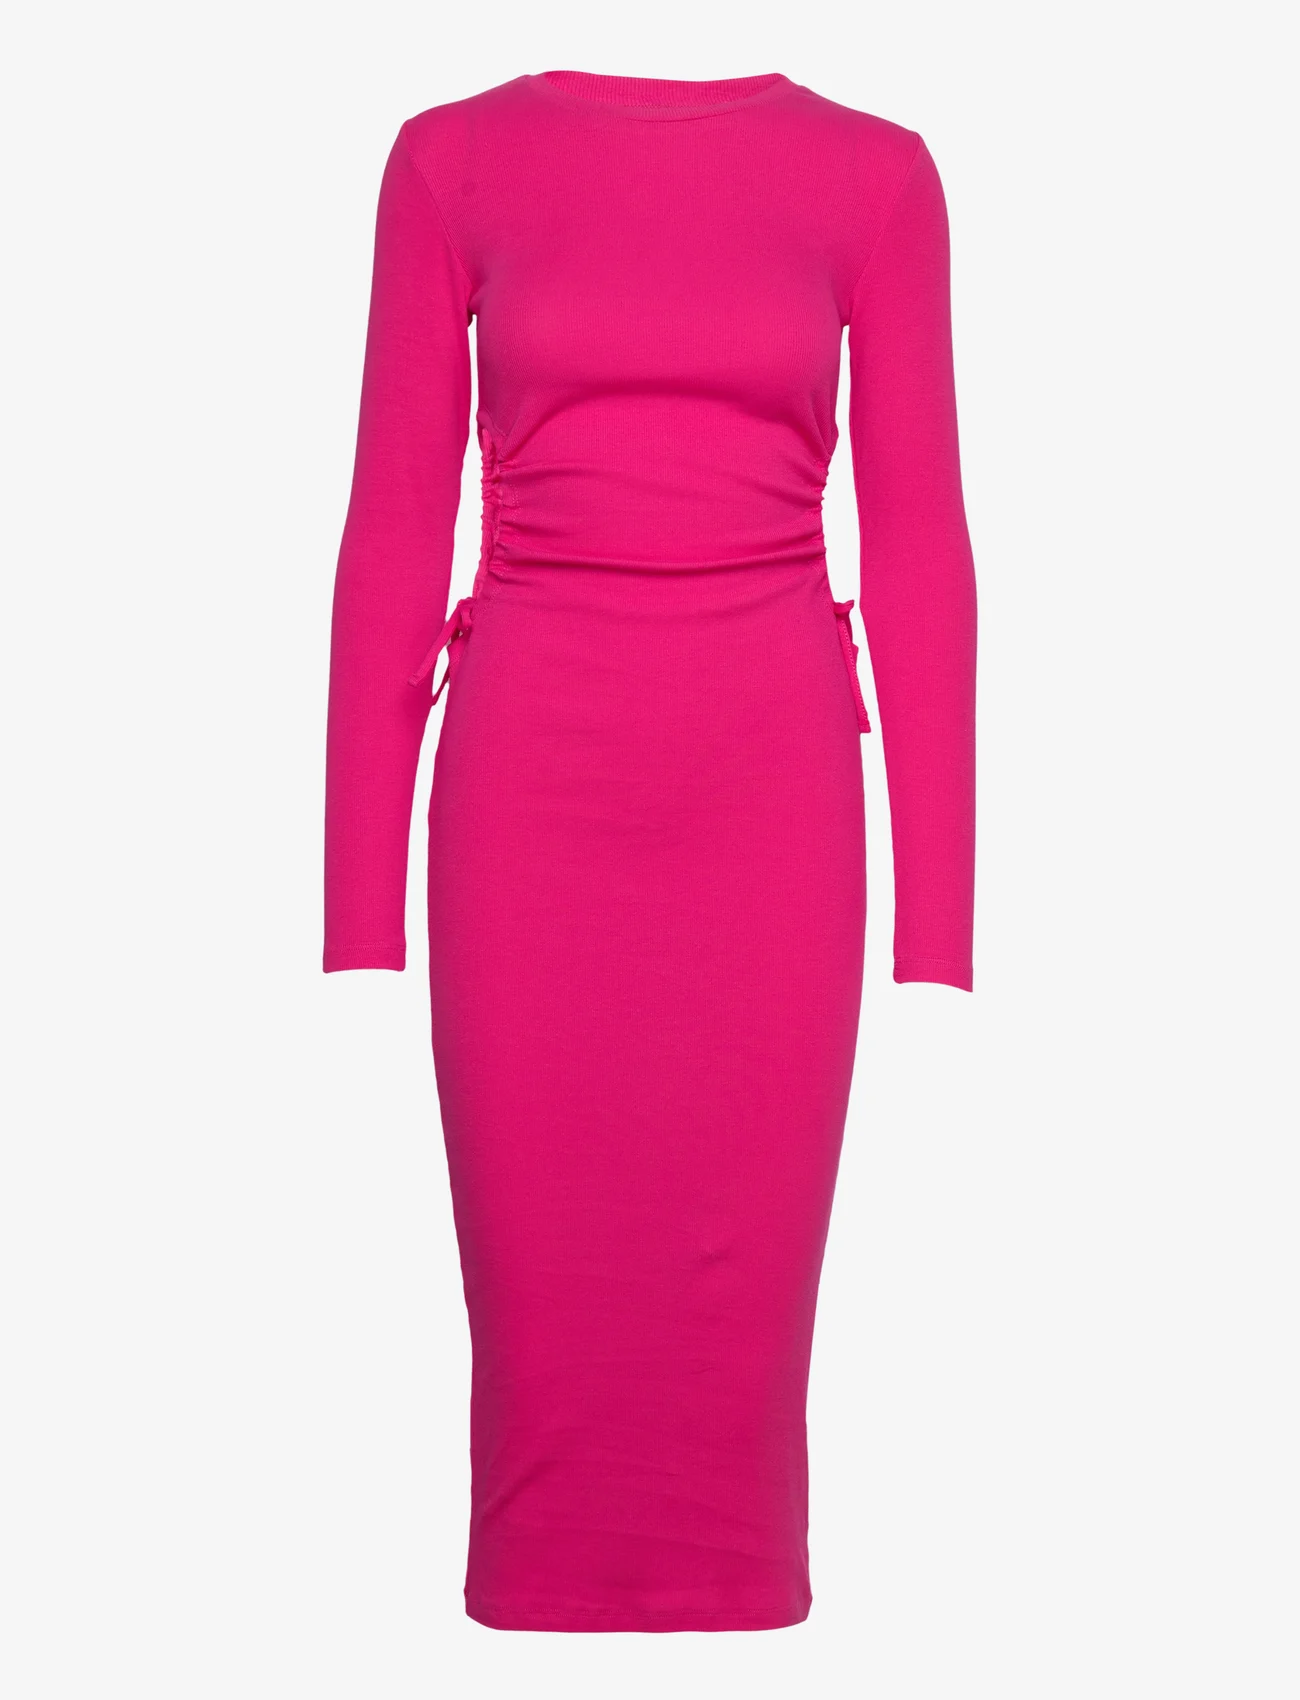 Envii - ENALLY LS HOLE DRESS 5314 - stramme kjoler - beetroot purple - 0